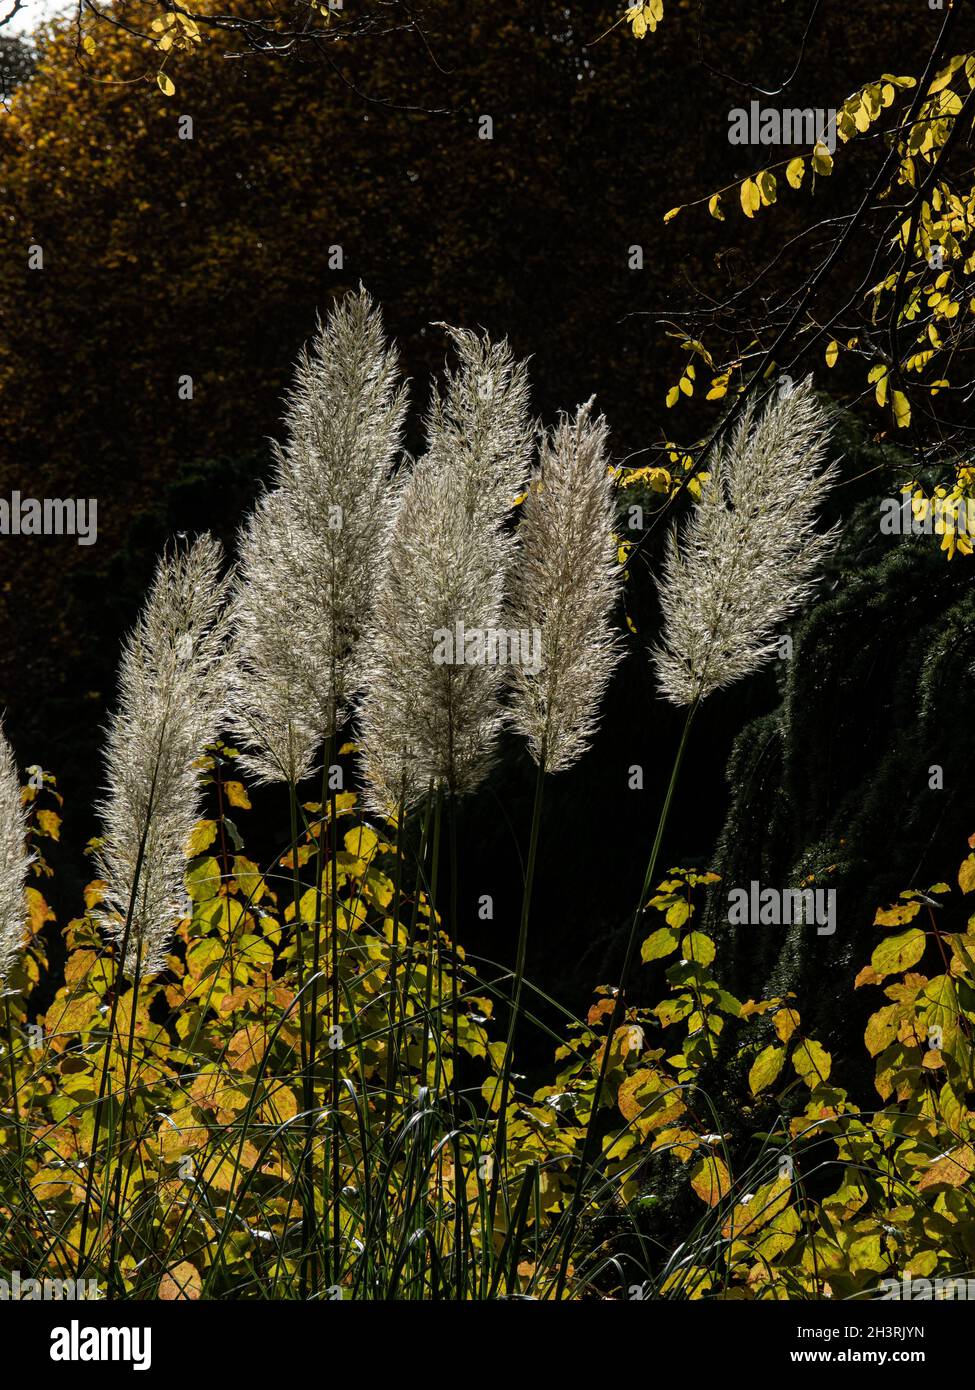 Le panache délicat de l'herbe de pampas rétro-éclairé par la faible lumière d'automne Banque D'Images